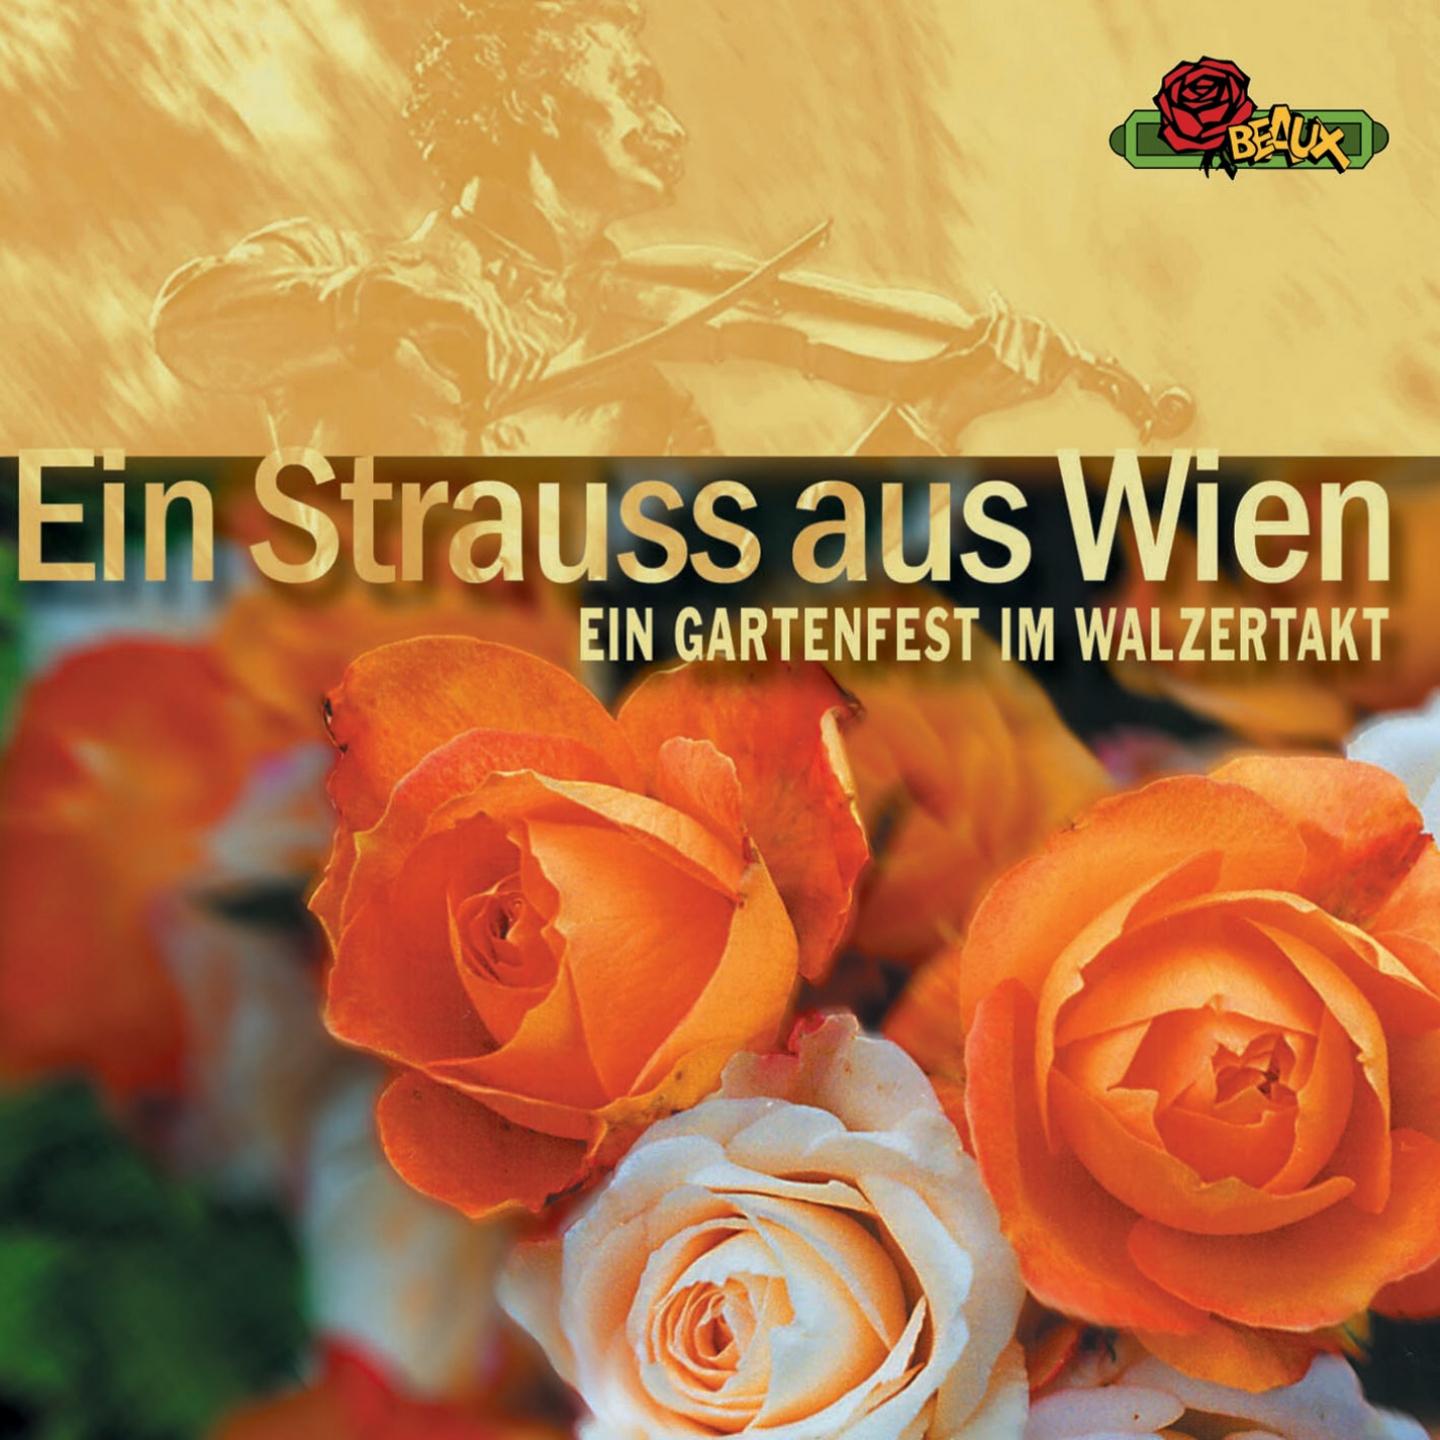 Ein Strauss aus Wien (Ein Gartenfest im Walzertakt)